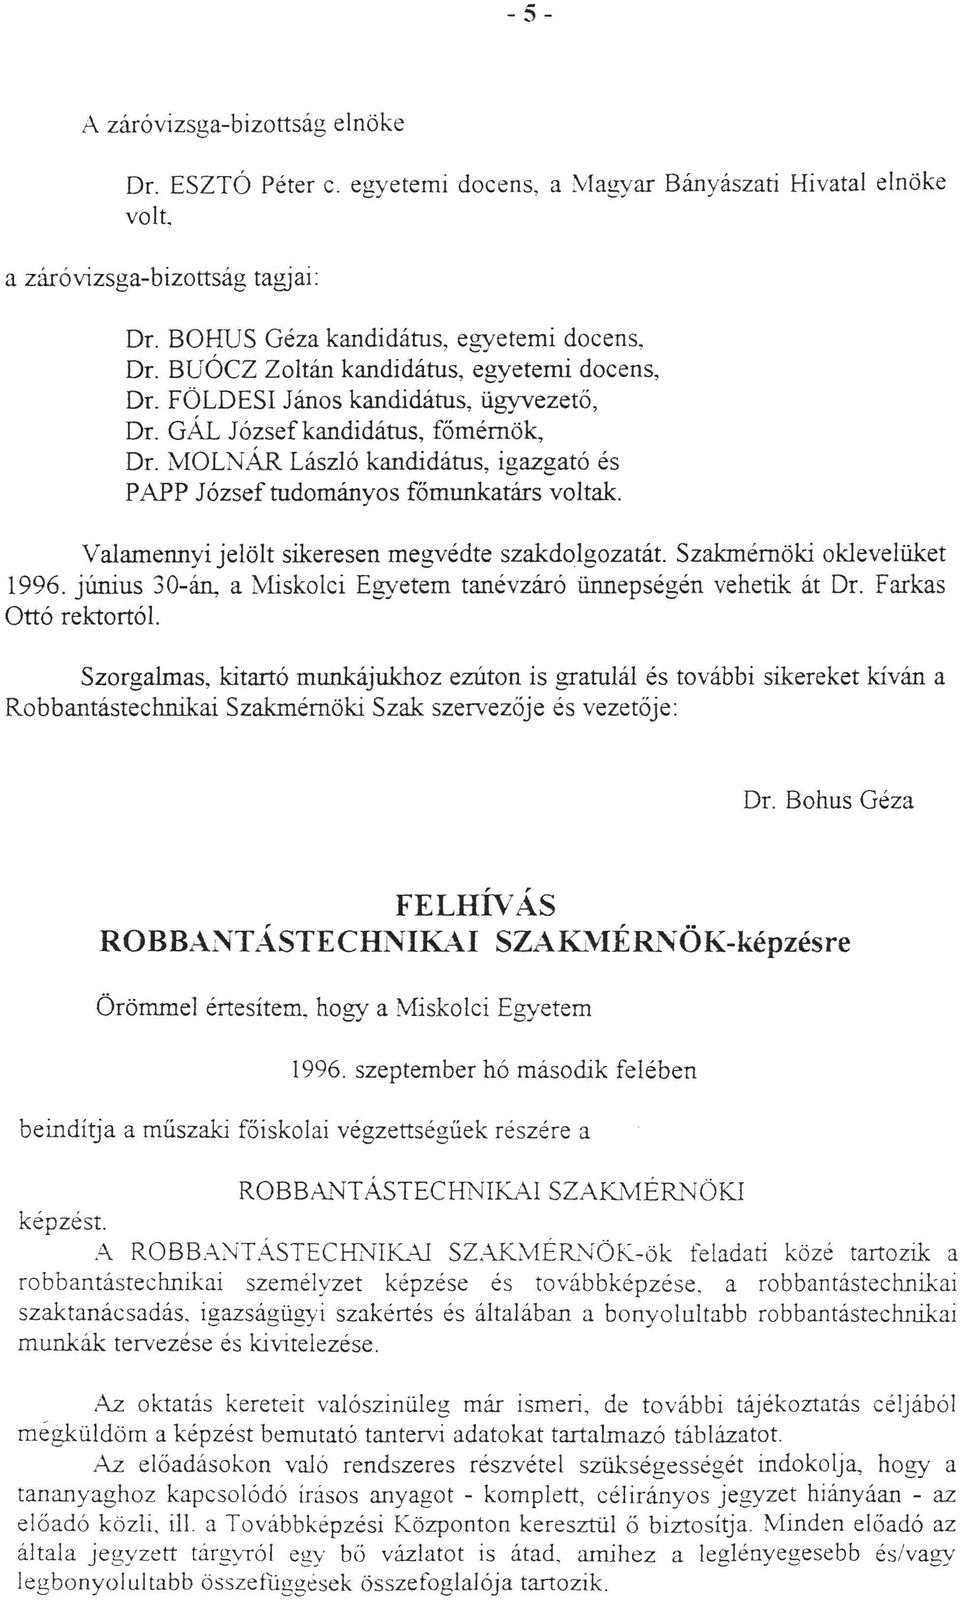 Vaamennyi jeöt sikeresen megvédte szakdogozatát Szakmémöki okeveüket 1996. június 30-án, a iyiskoci Egyetem tanévzáró ünnepségén vehetik át Dr.